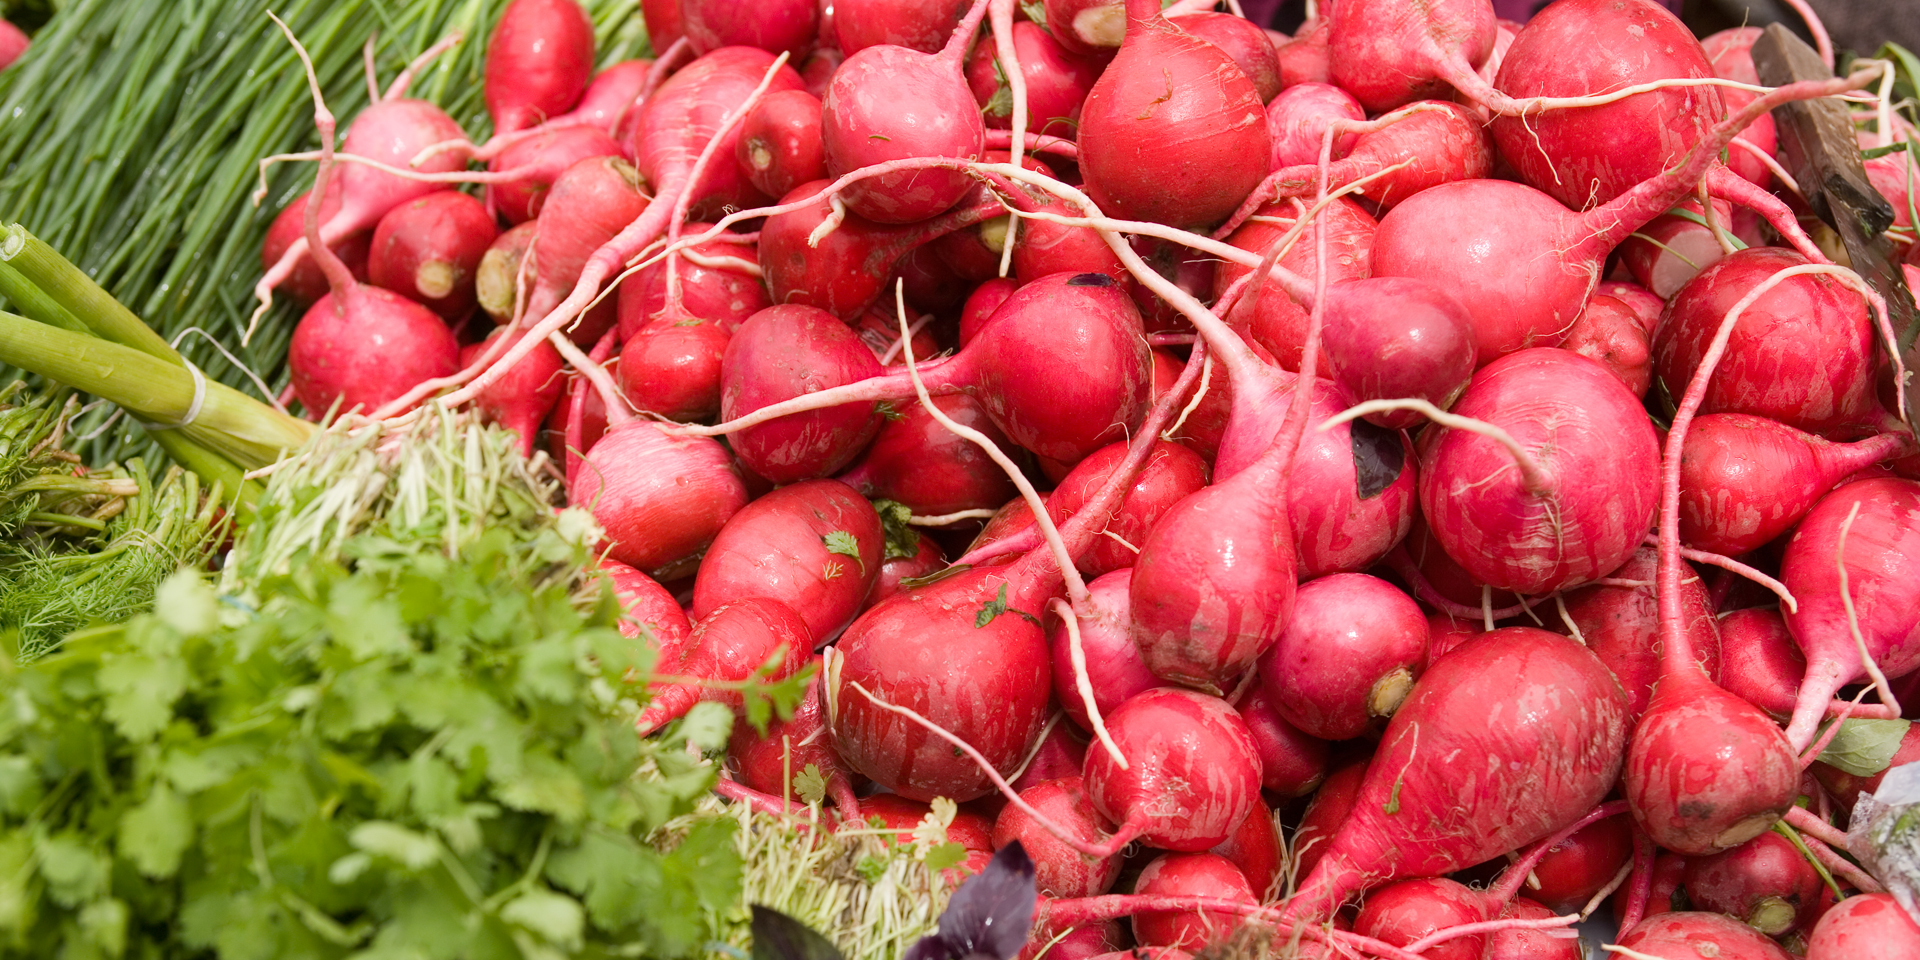 Image of a large bushel of radishes